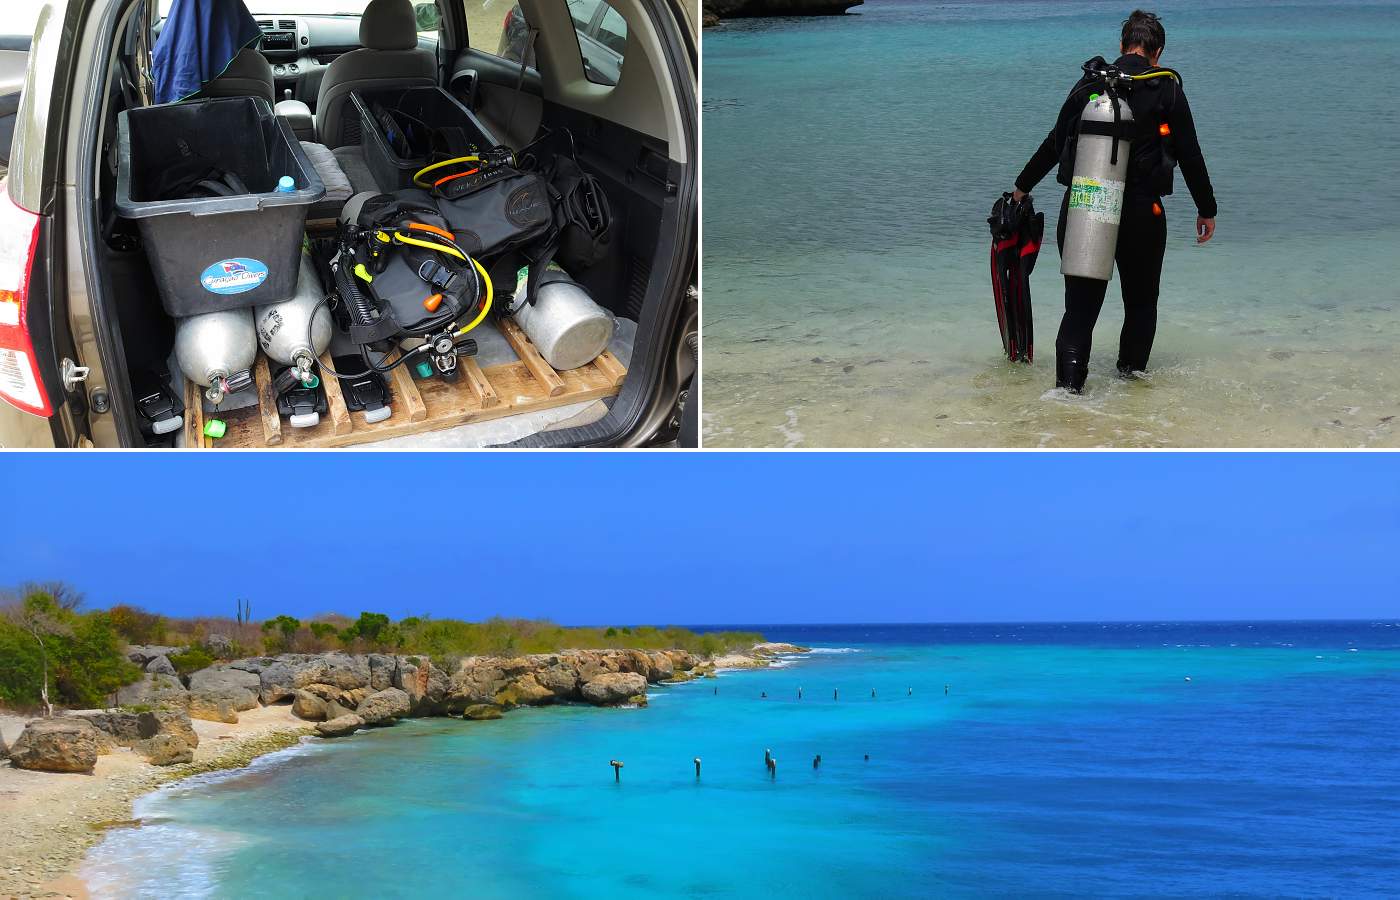 Fotografie z potápění, výstroj v automobilu a snímky z pláží